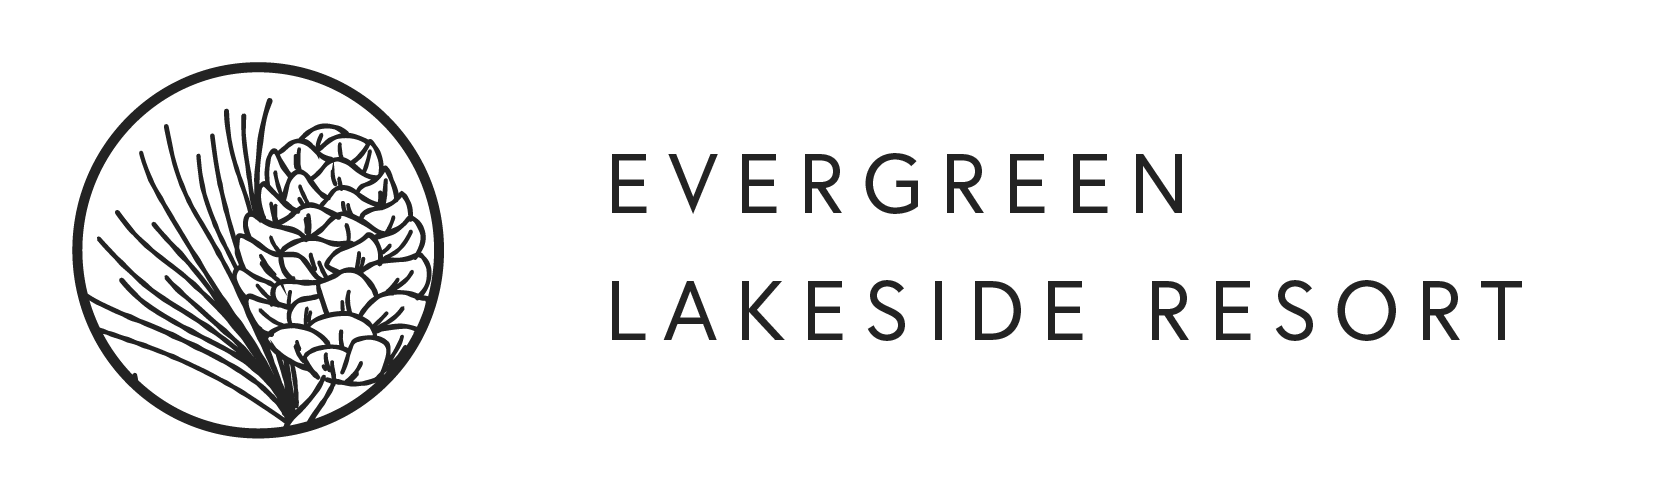 Evergreen Lakeside resort logo